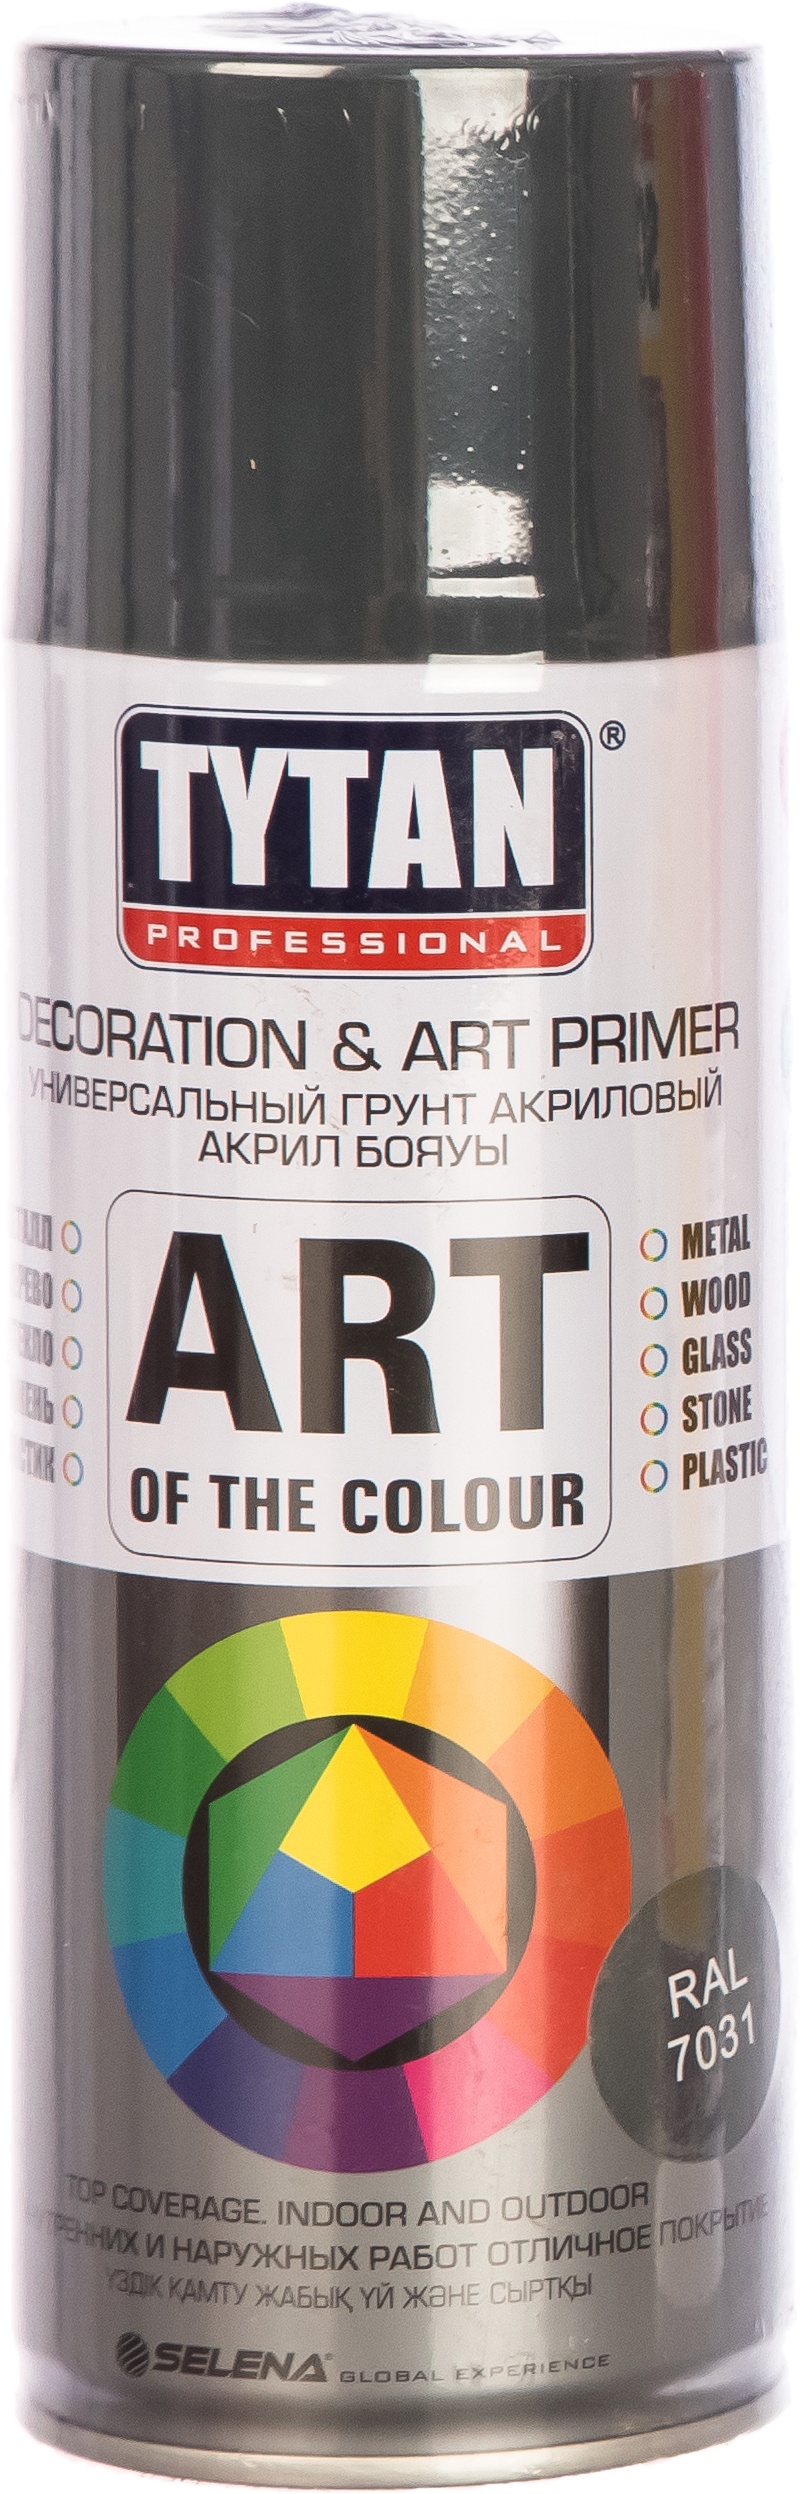 Краска TYTAN Professional Art of the colour праймер серый RAL7031 400мл аэрозольная